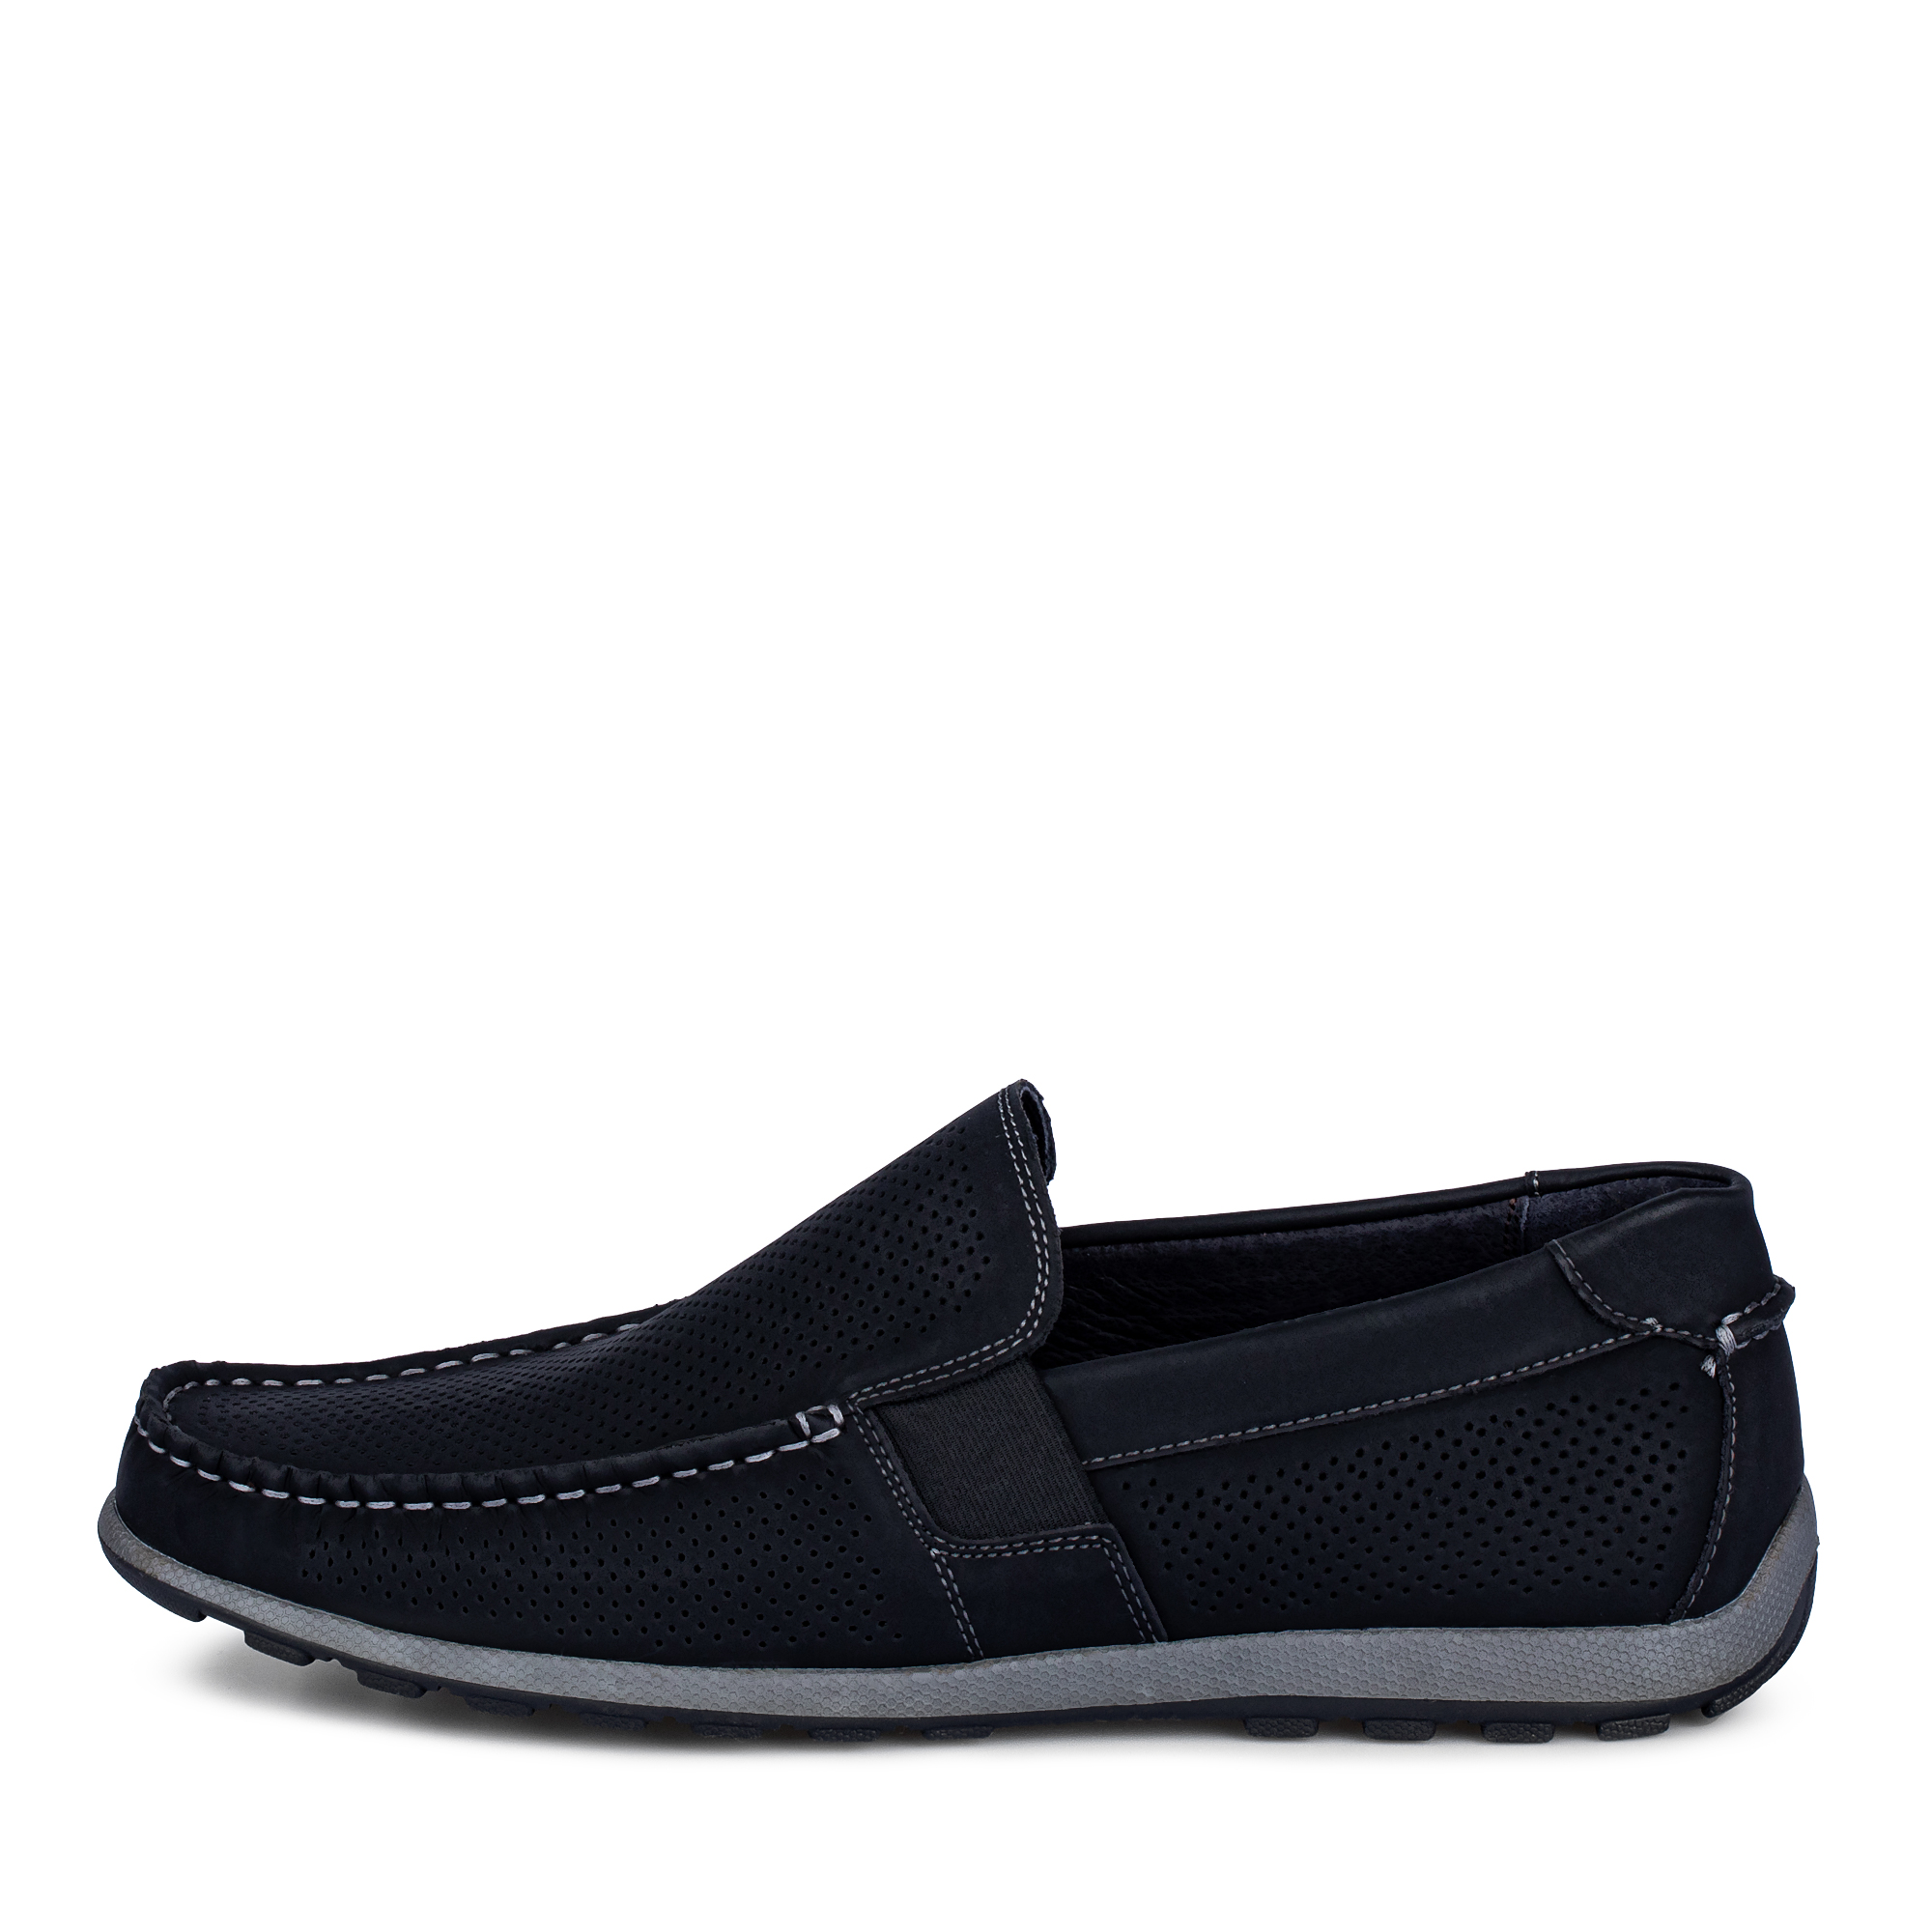 Туфли/полуботинки Thomas Munz 058-124C-1602, цвет черный, размер 41